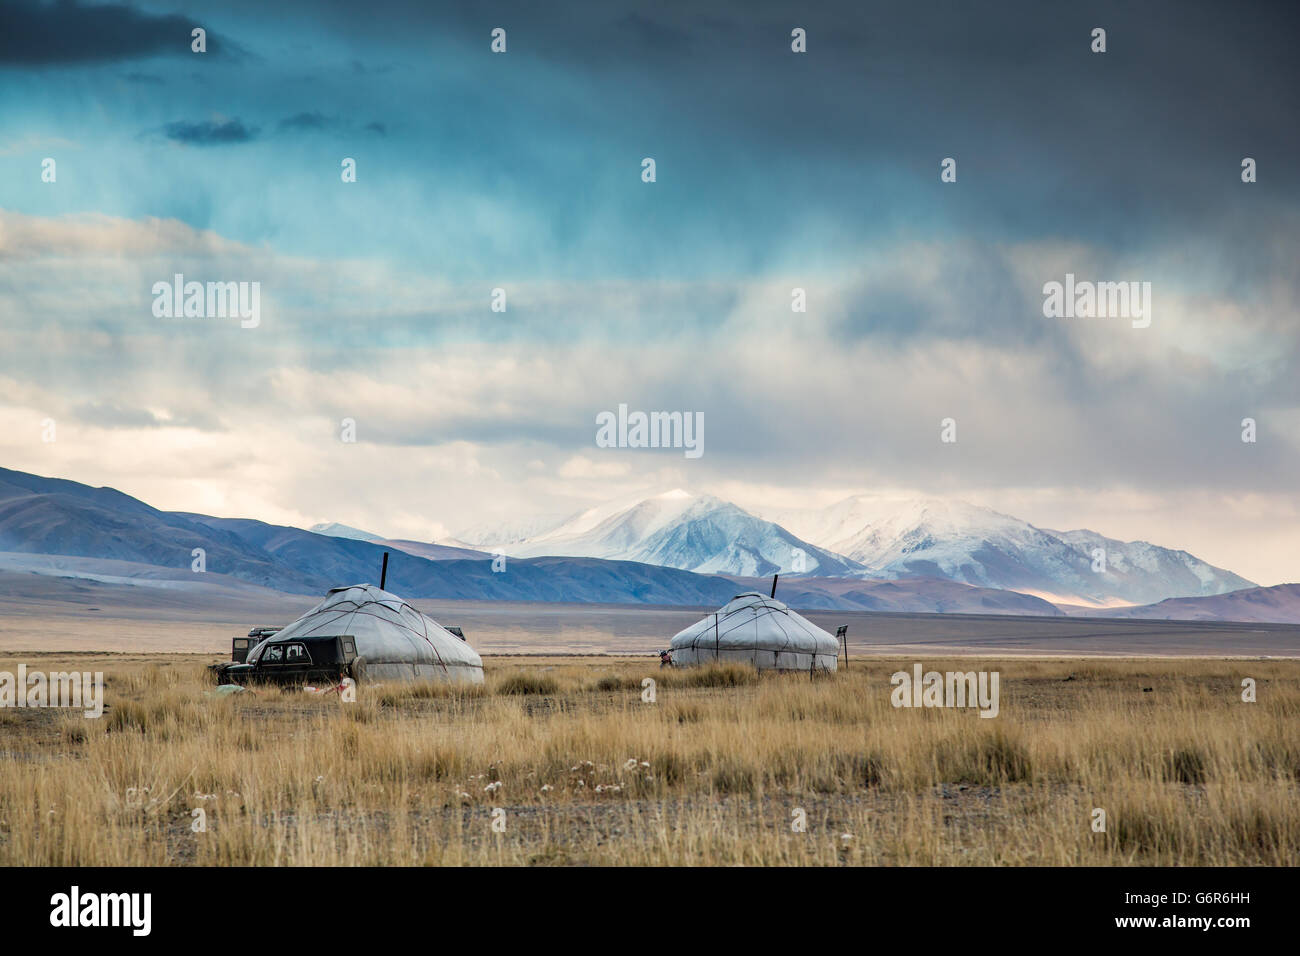 Deux yourtes dans un paysage de l'ouest de la Mongolie avec les montagnes enneigées à l'arrière-plan Banque D'Images